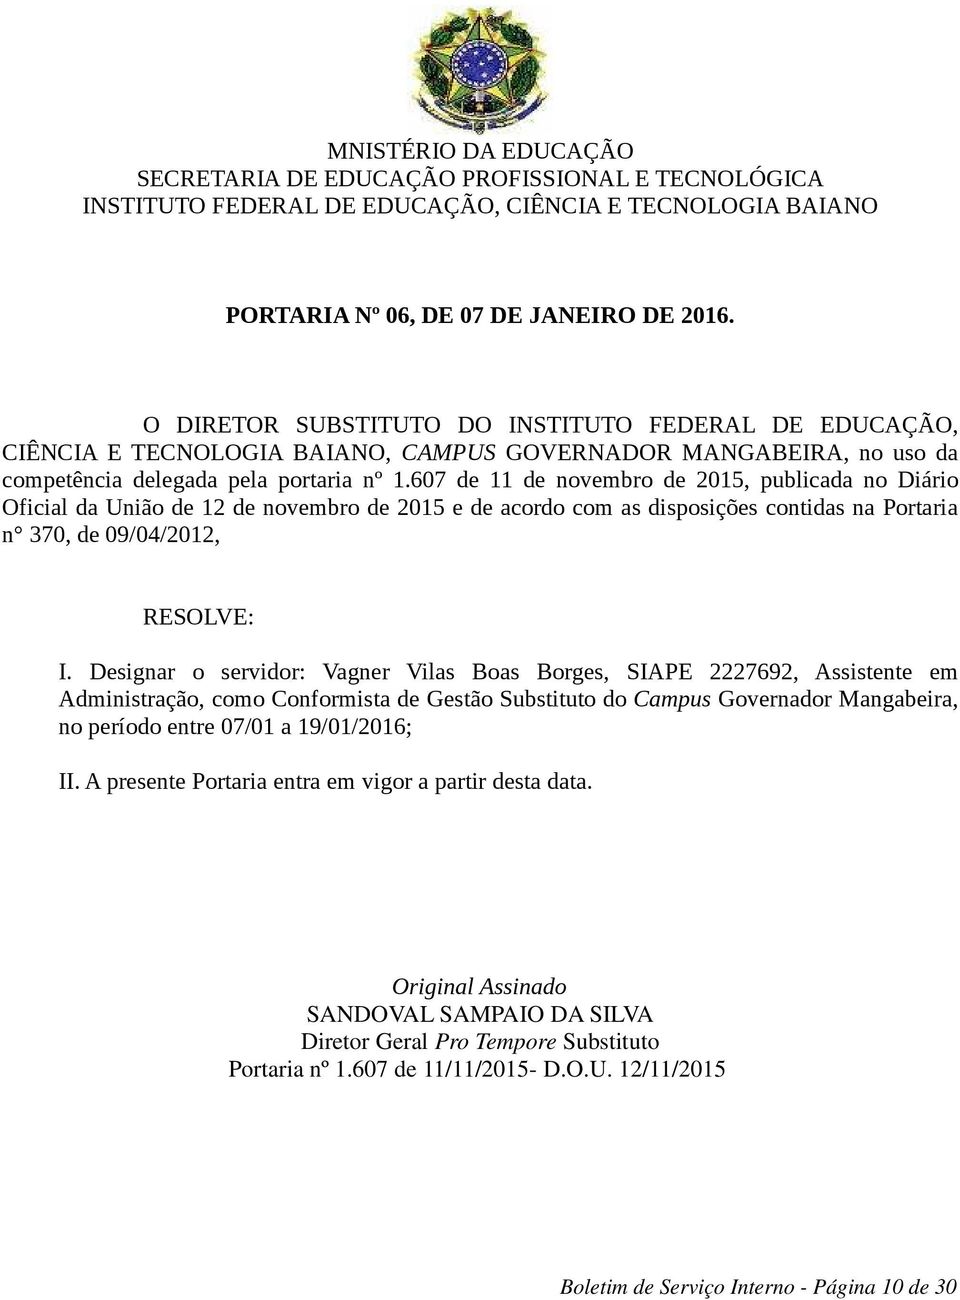 607 de 11 de novembro de 2015, publicada no Diário Oficial da União de 12 de novembro de 2015 e de acordo com as disposições contidas na Portaria n 370, de 09/04/2012, I.